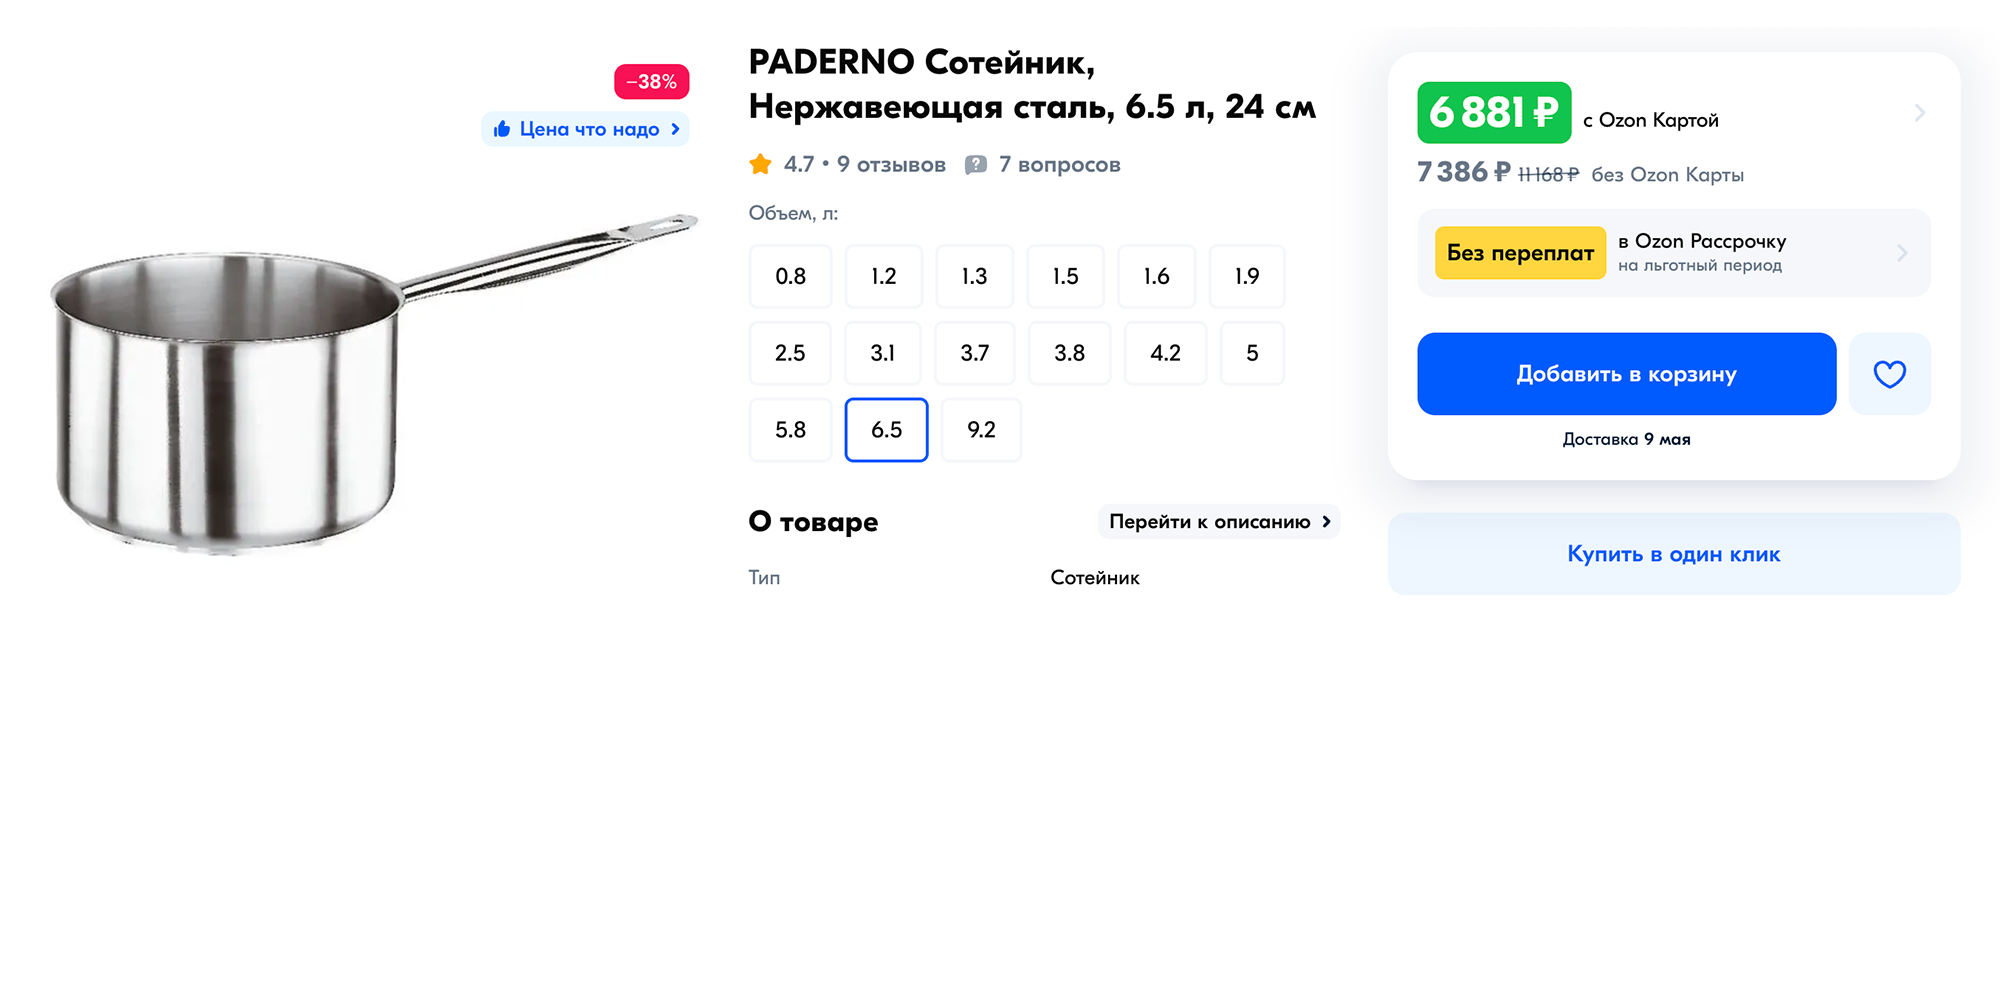 Сотейник из нержавейки профессионального бренда Paderno диаметром 24 см стоит 7386 ₽. Но есть немало гораздо более бюджетных моделей. Источник: ozon.ru